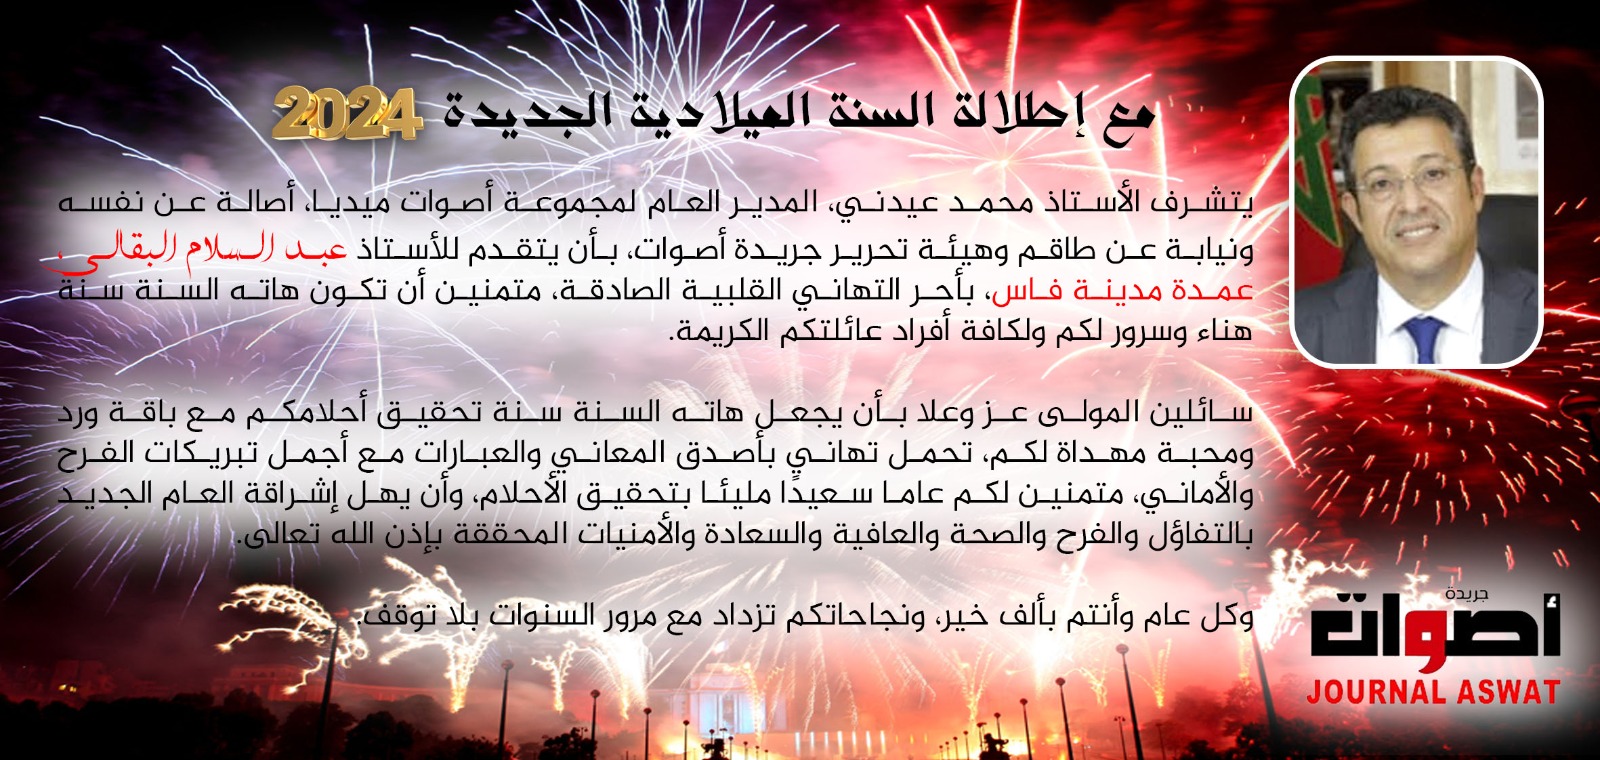 جريدة أصوات تهنئ السيد عبد السلام البقالي رئيس جماعة فاس بمناسبة حلول السنة الميلادية 2024